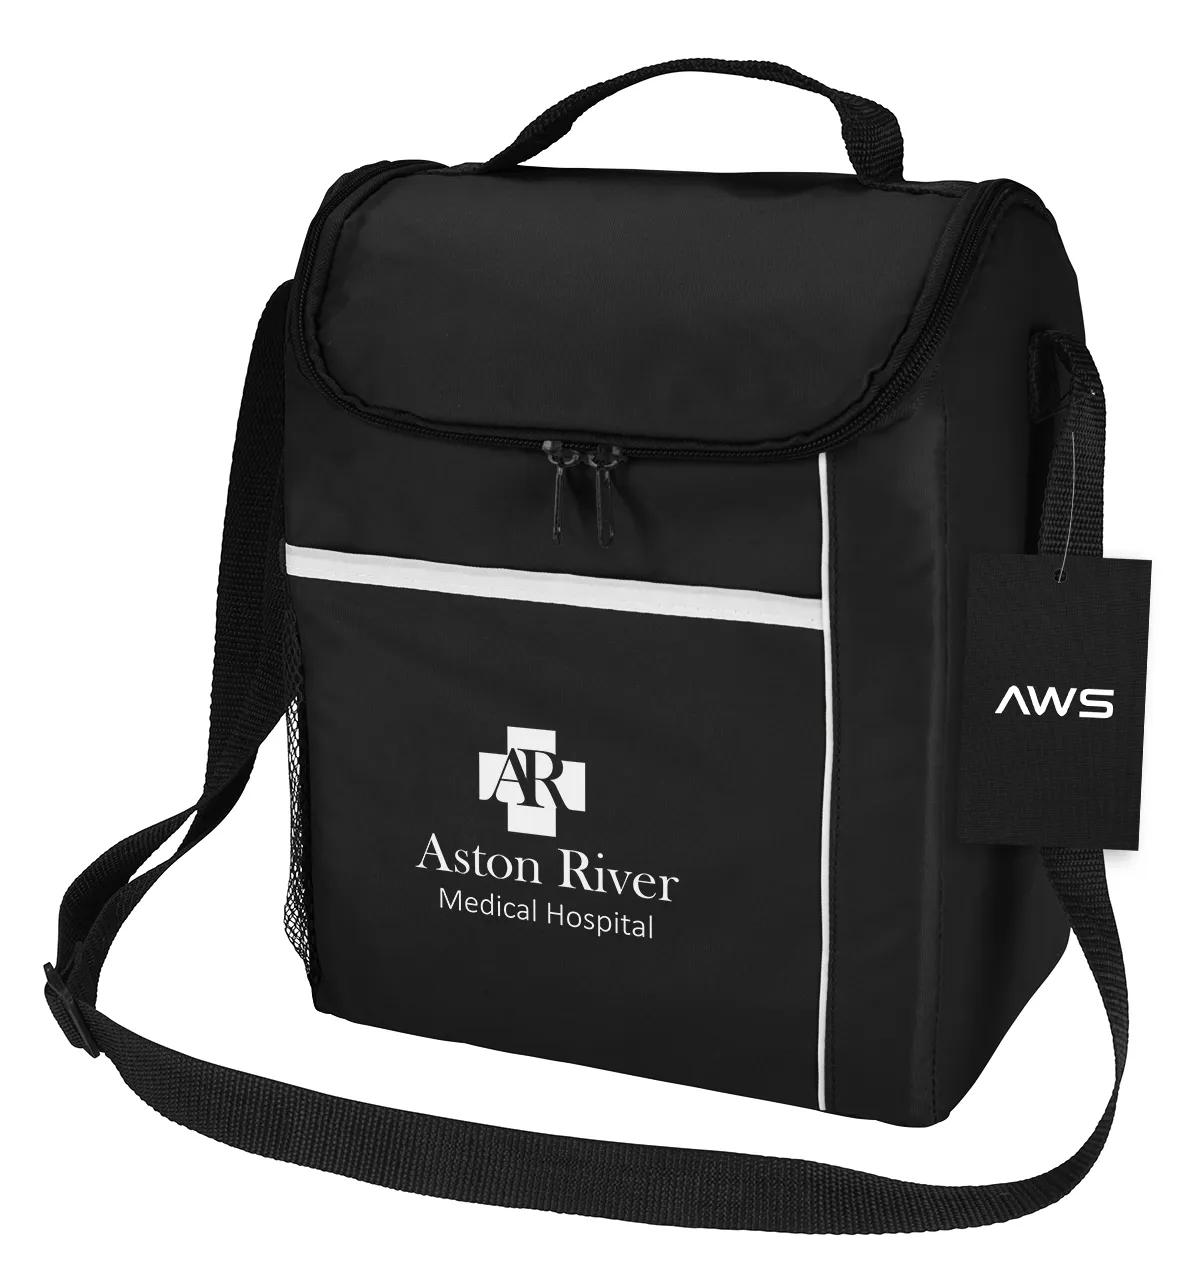 AWS Conrad Cooler Bag 3 of 4